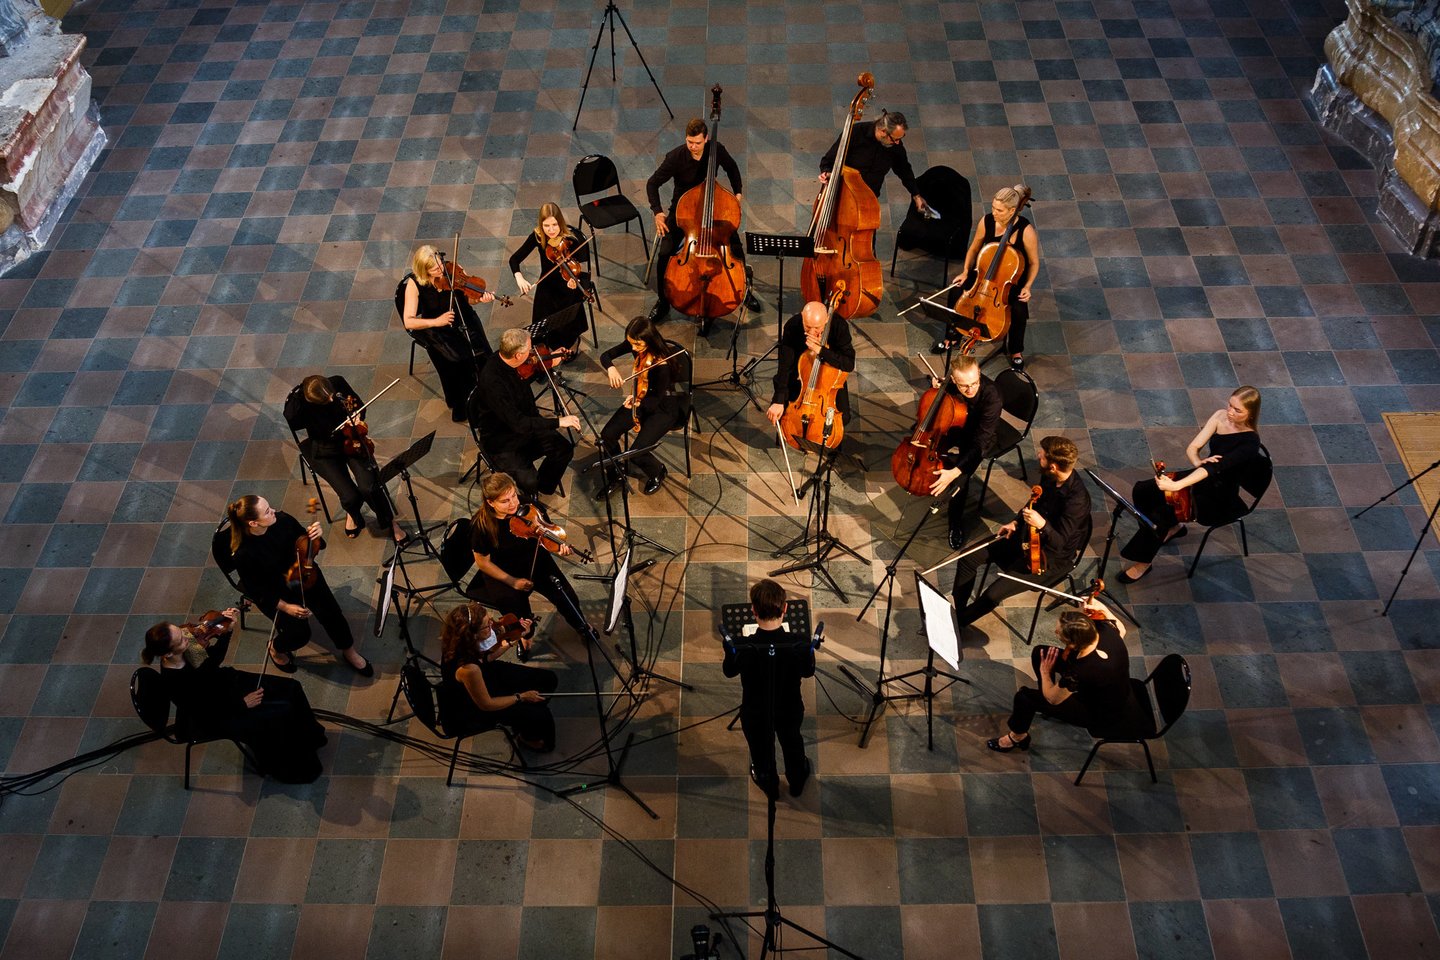  Šv. Kristoforo kamerinis orkestras didžiuojasi pristatydamas pirmąjį tarptautinį kompozitorių konkursą. <br> Pranešimo nuotr. 